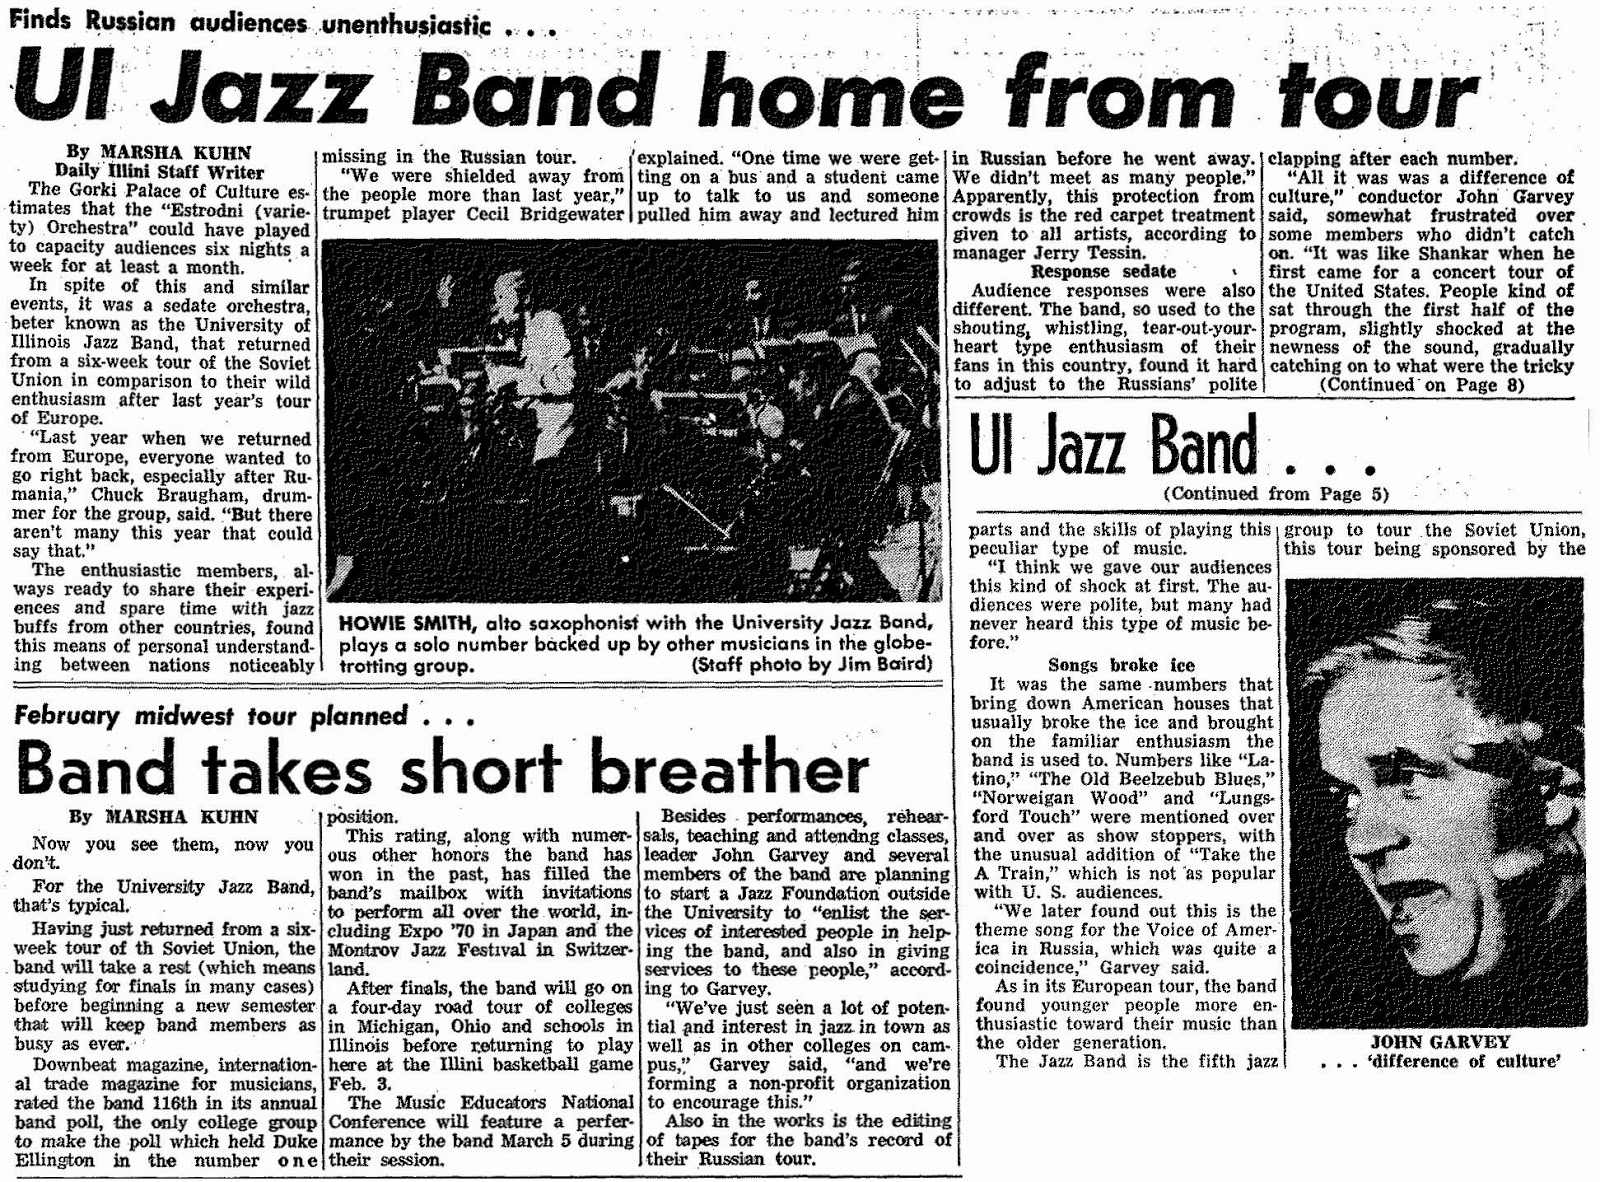 John Garvey and the University of Illinois Jazz Band: 1969/1970